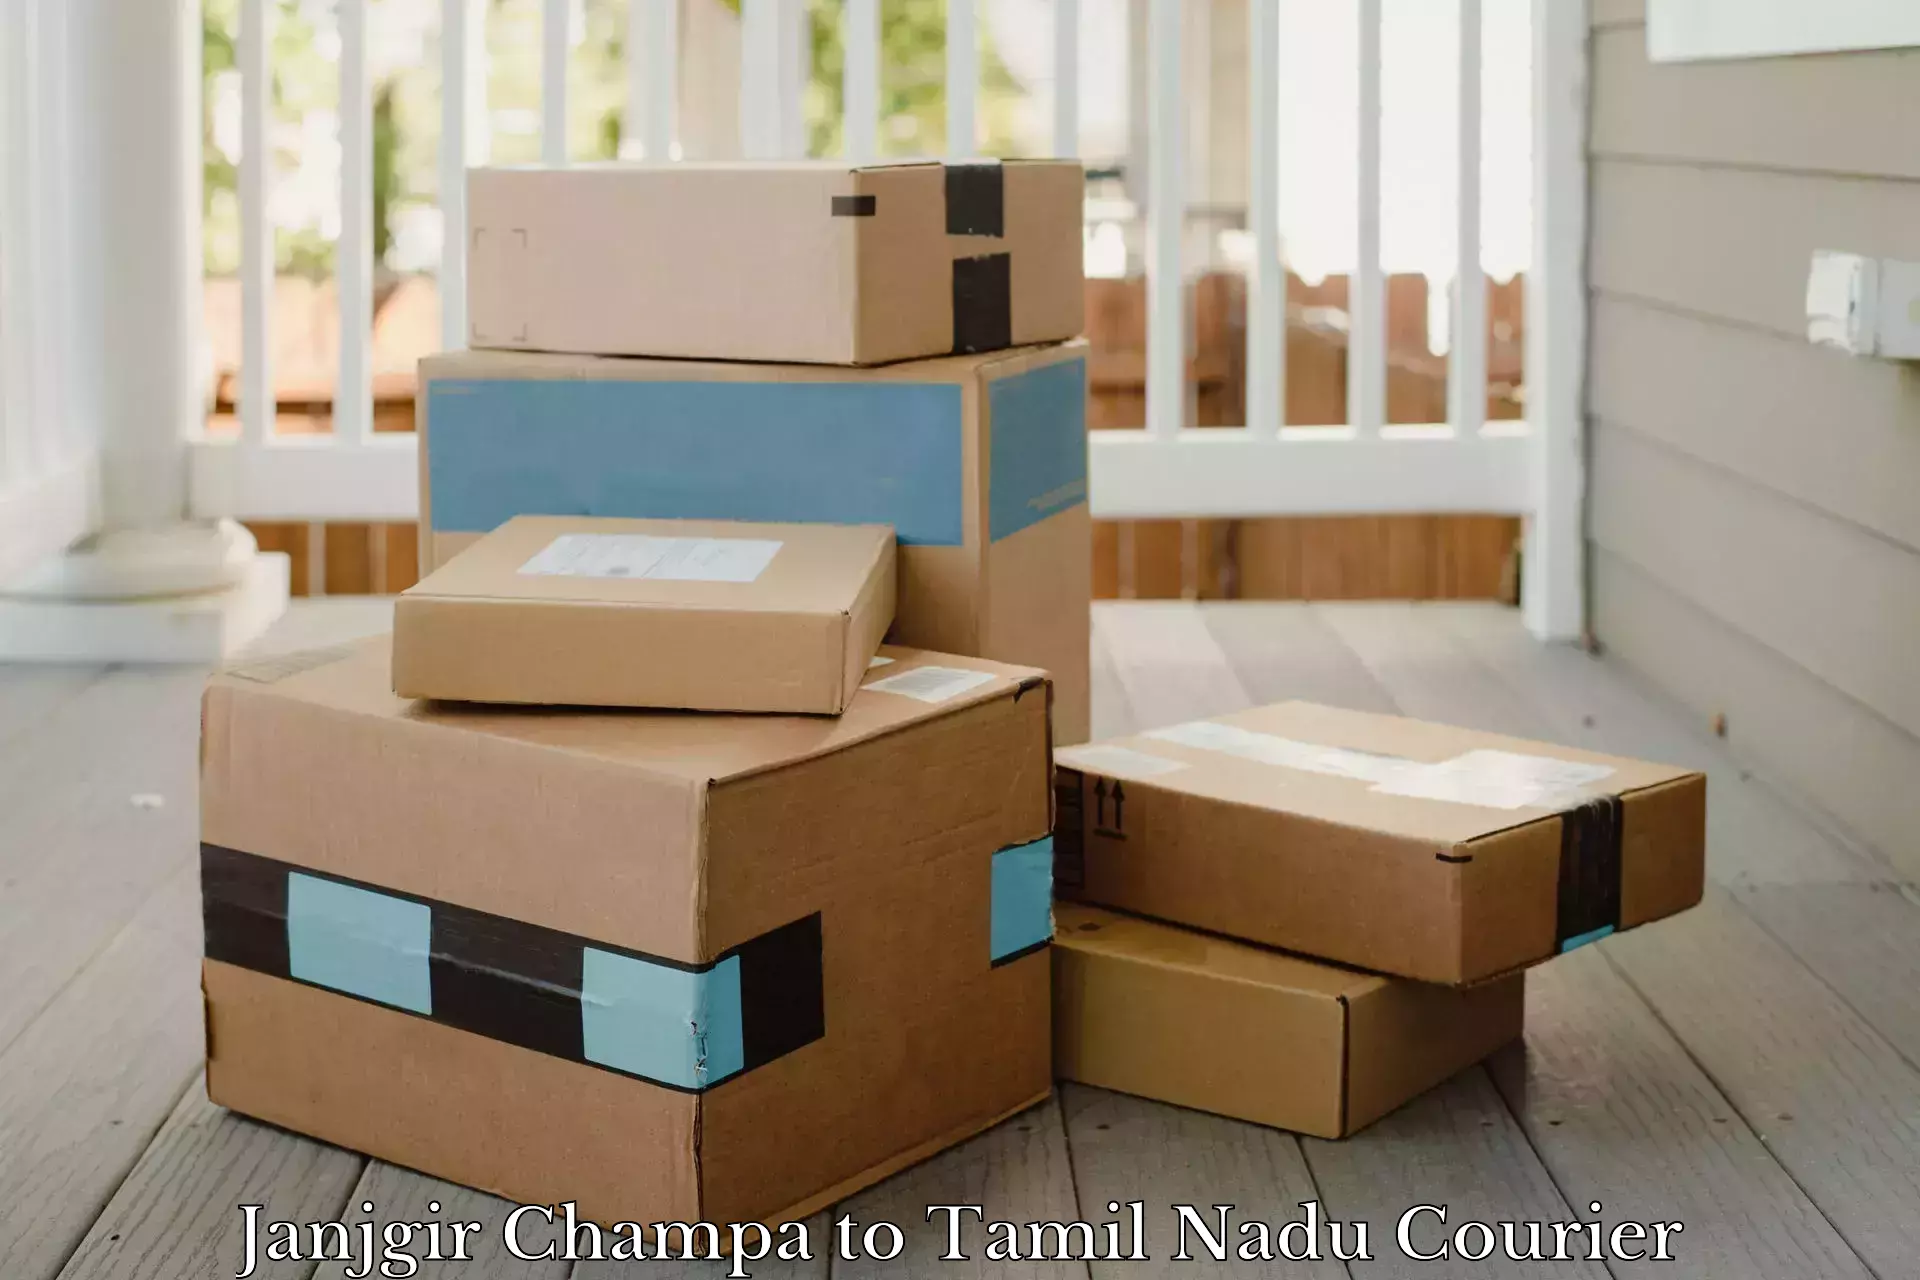 Efficient parcel delivery Janjgir Champa to Tirupattur